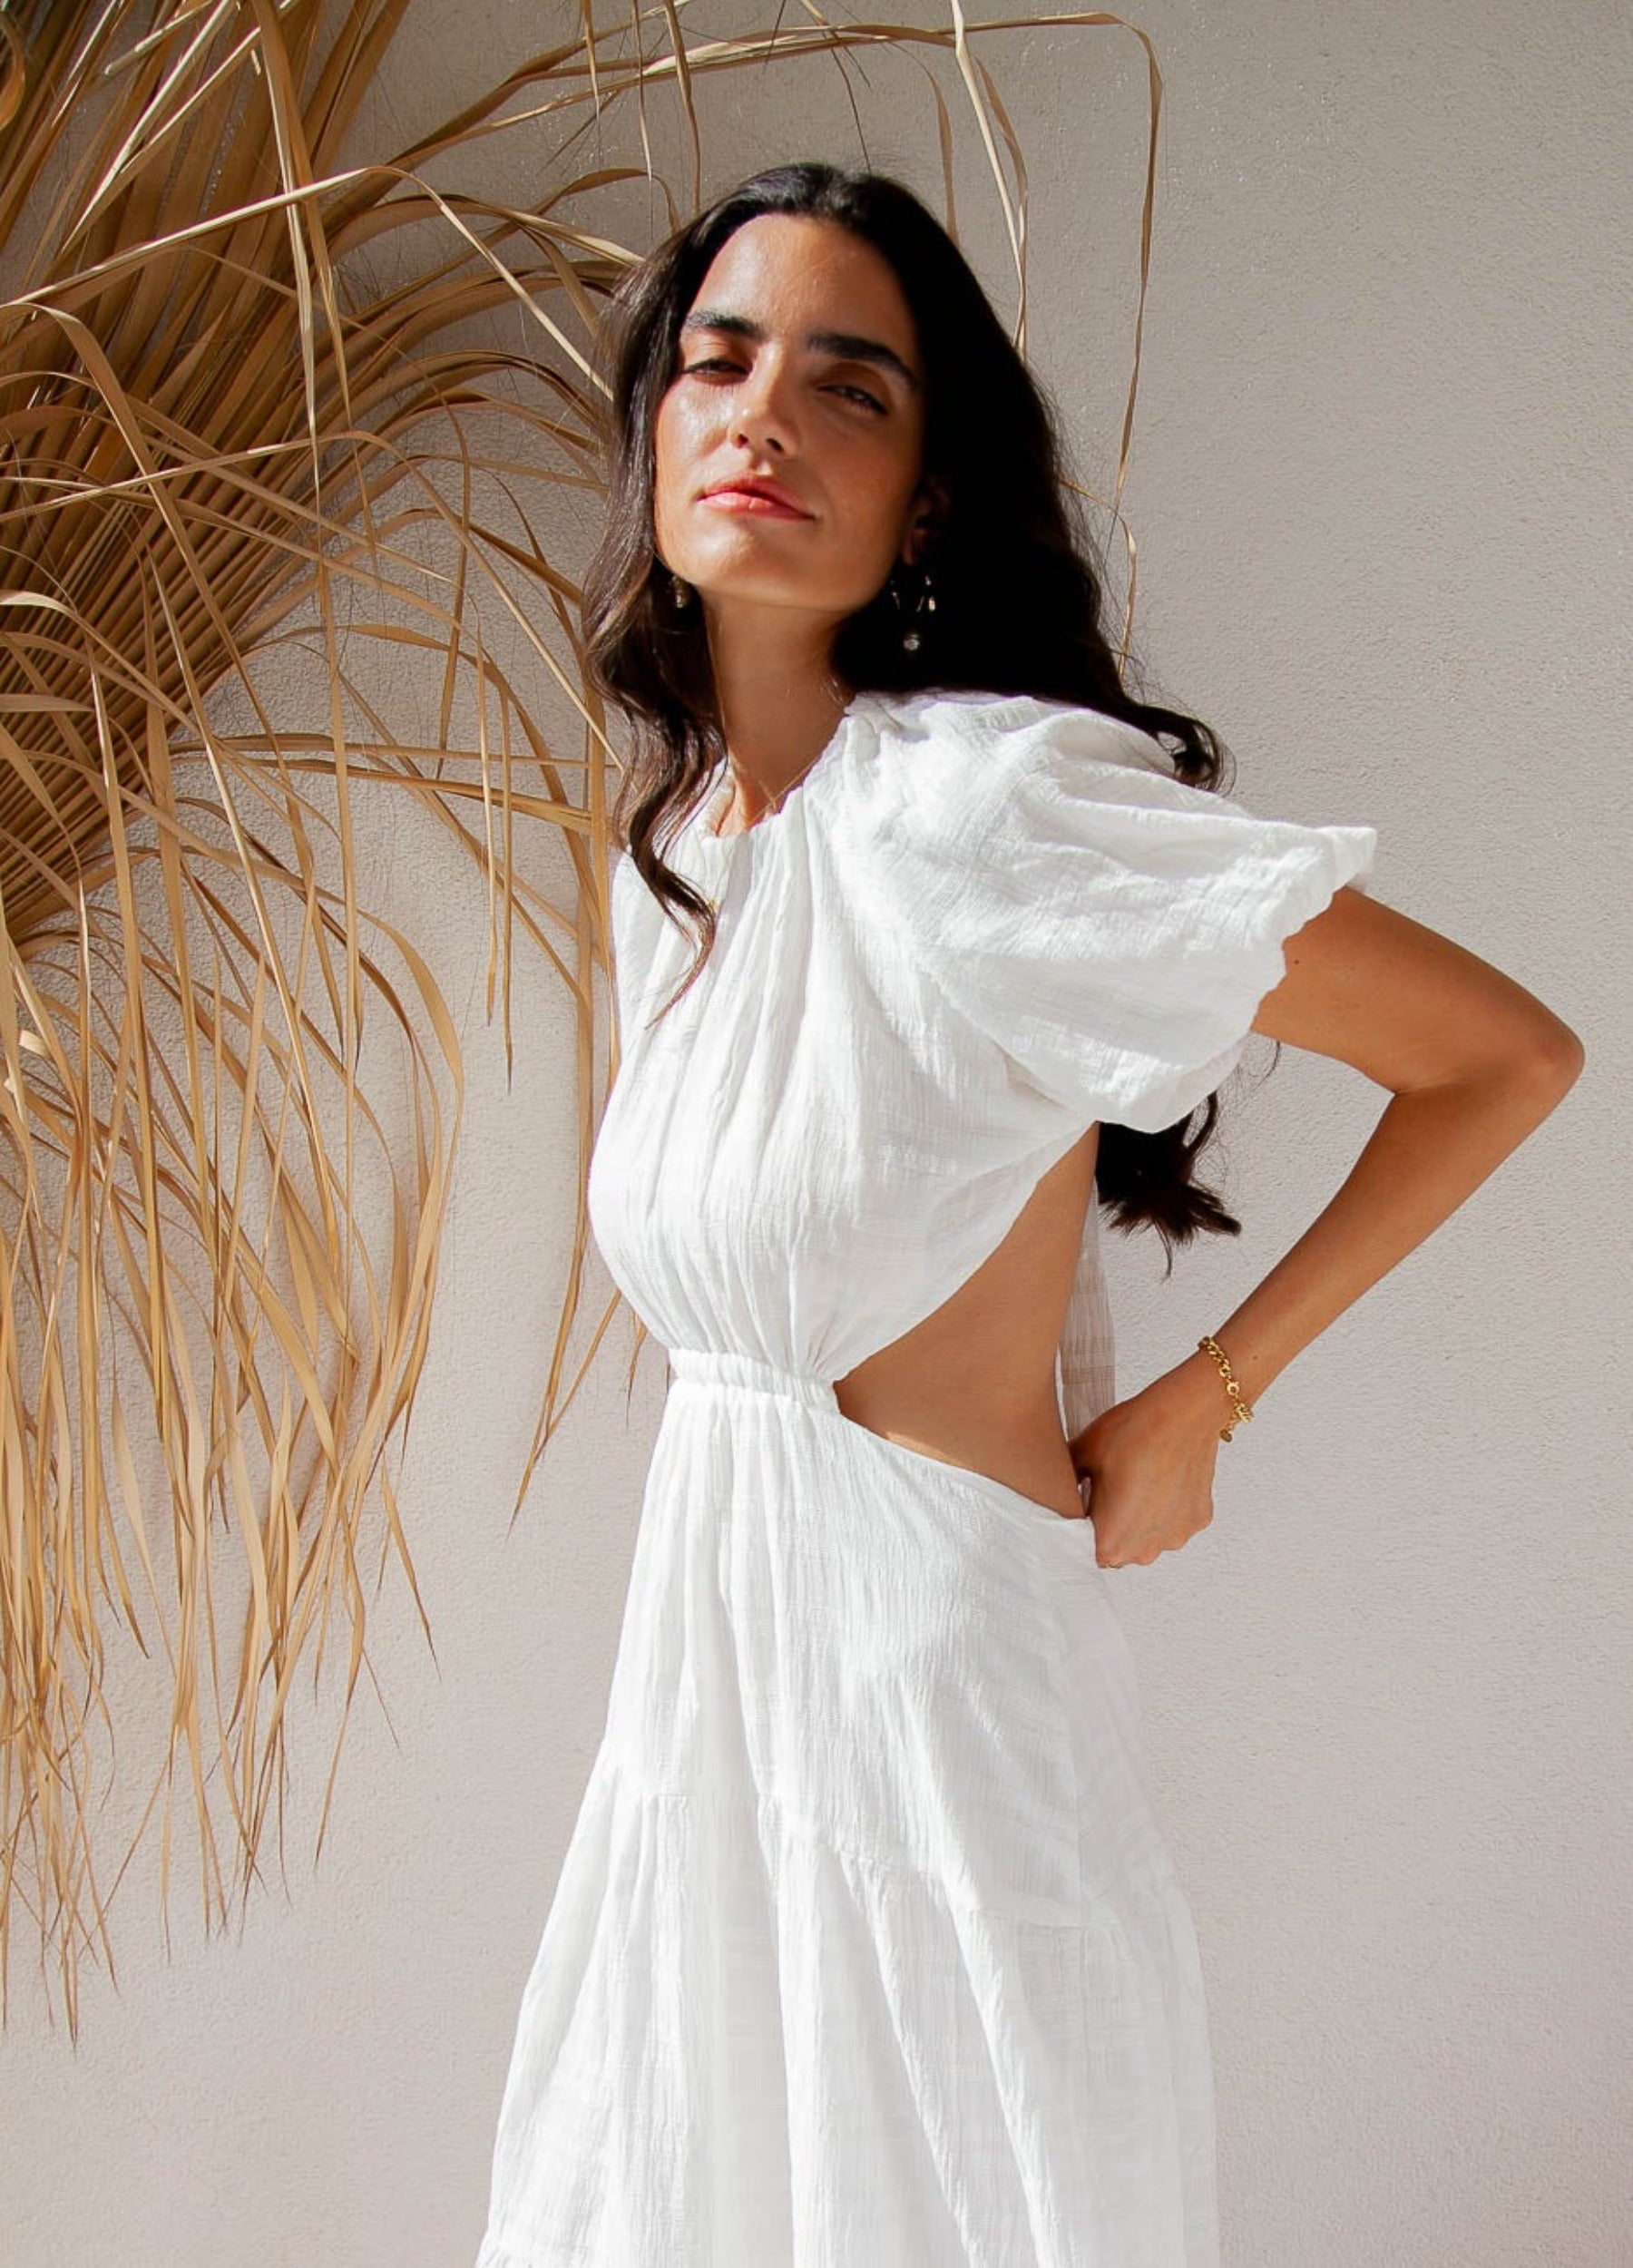 Woman wearing a white dress